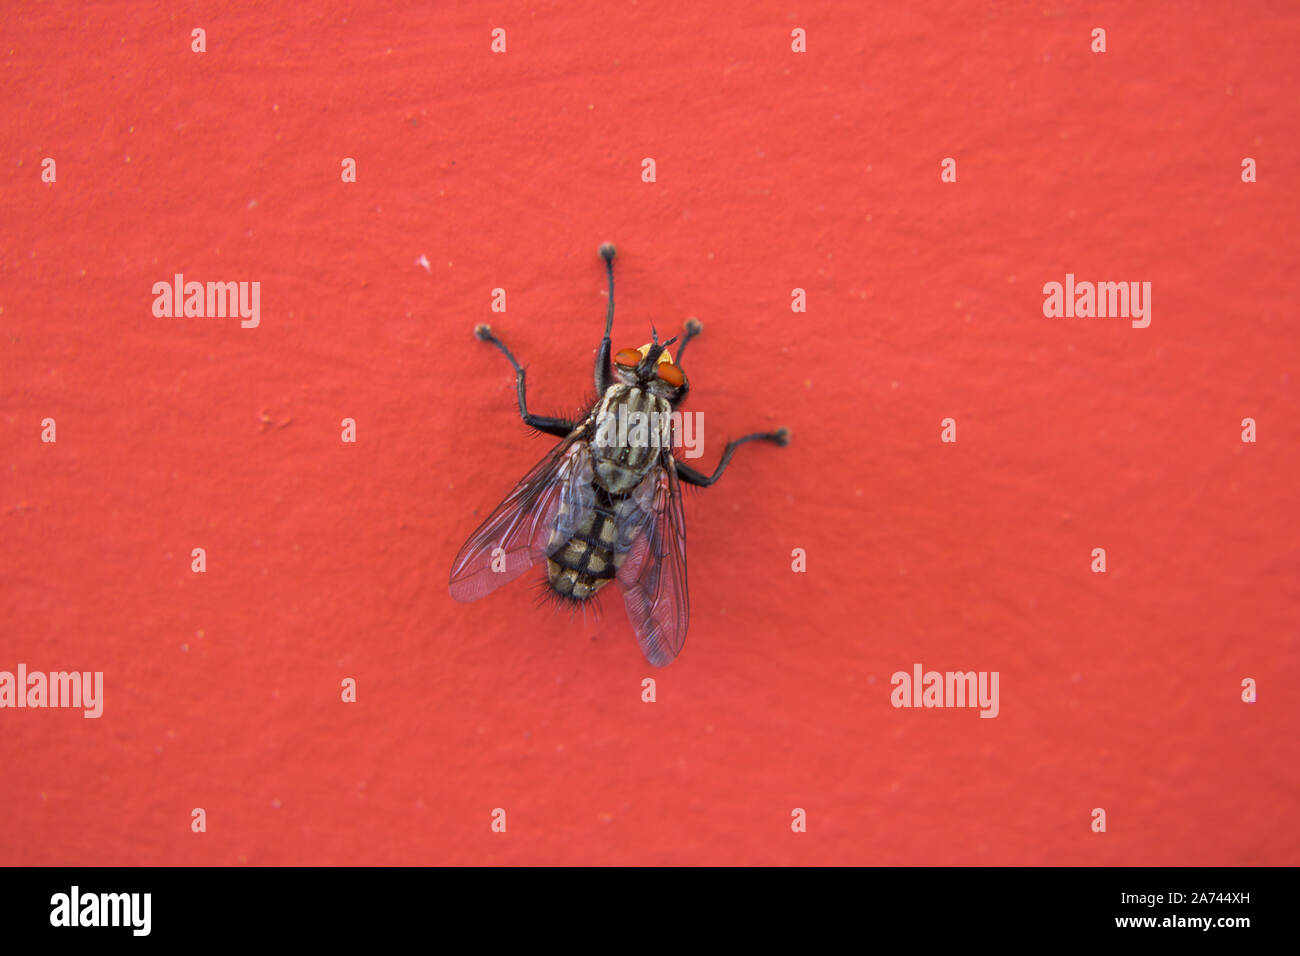 Près d'une mouche à la photographie sur un fond rouge Banque D'Images